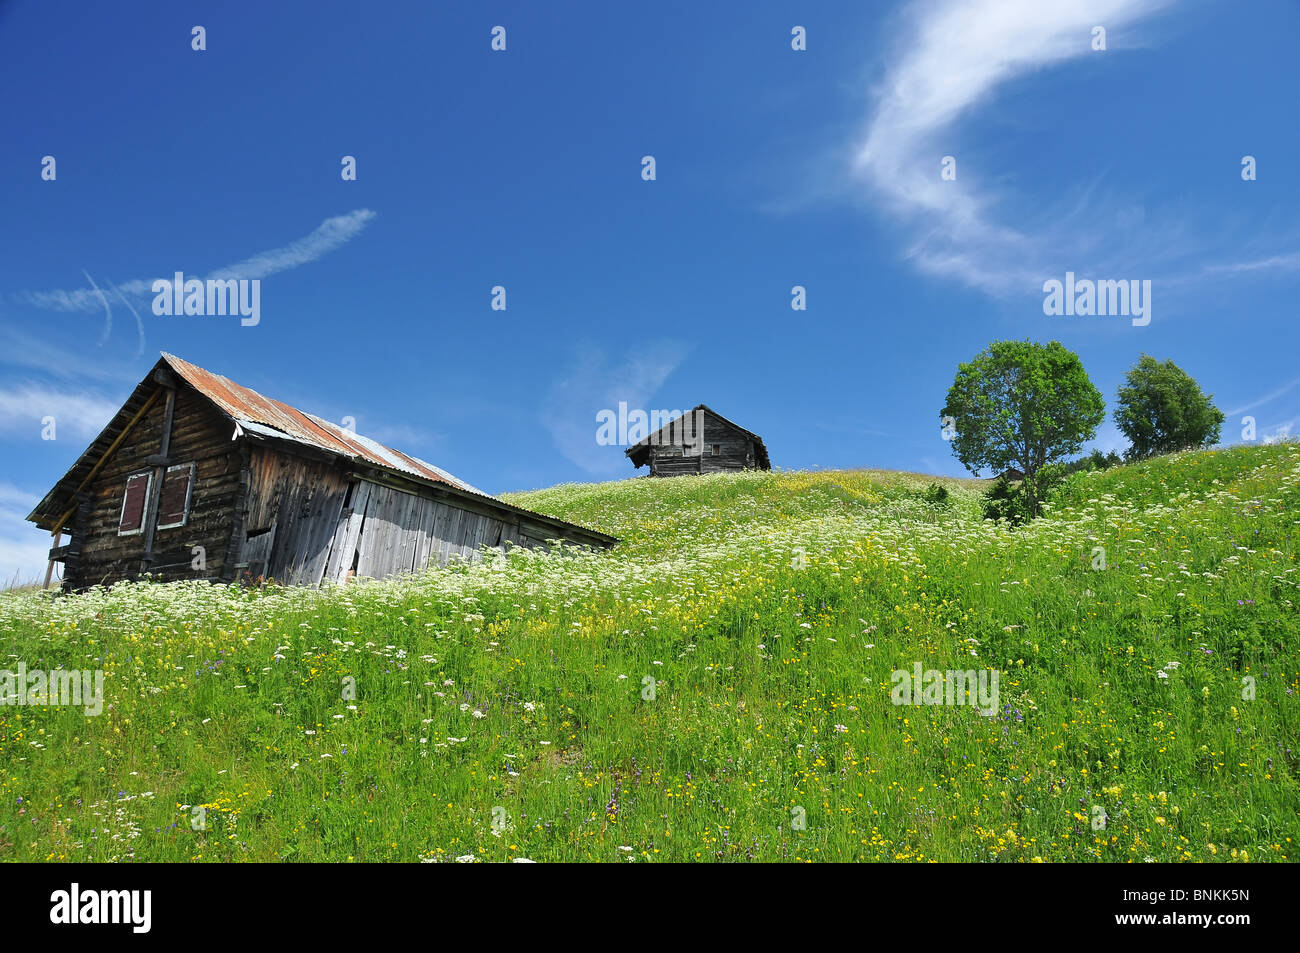 Schweiz Alpen Wiesen Blumen Bäume grünen Himmel Himmel Rasen Weide Weide Landschaft Natur Landwirtschaft Hütte Holz stabil fliegt, Stockfoto